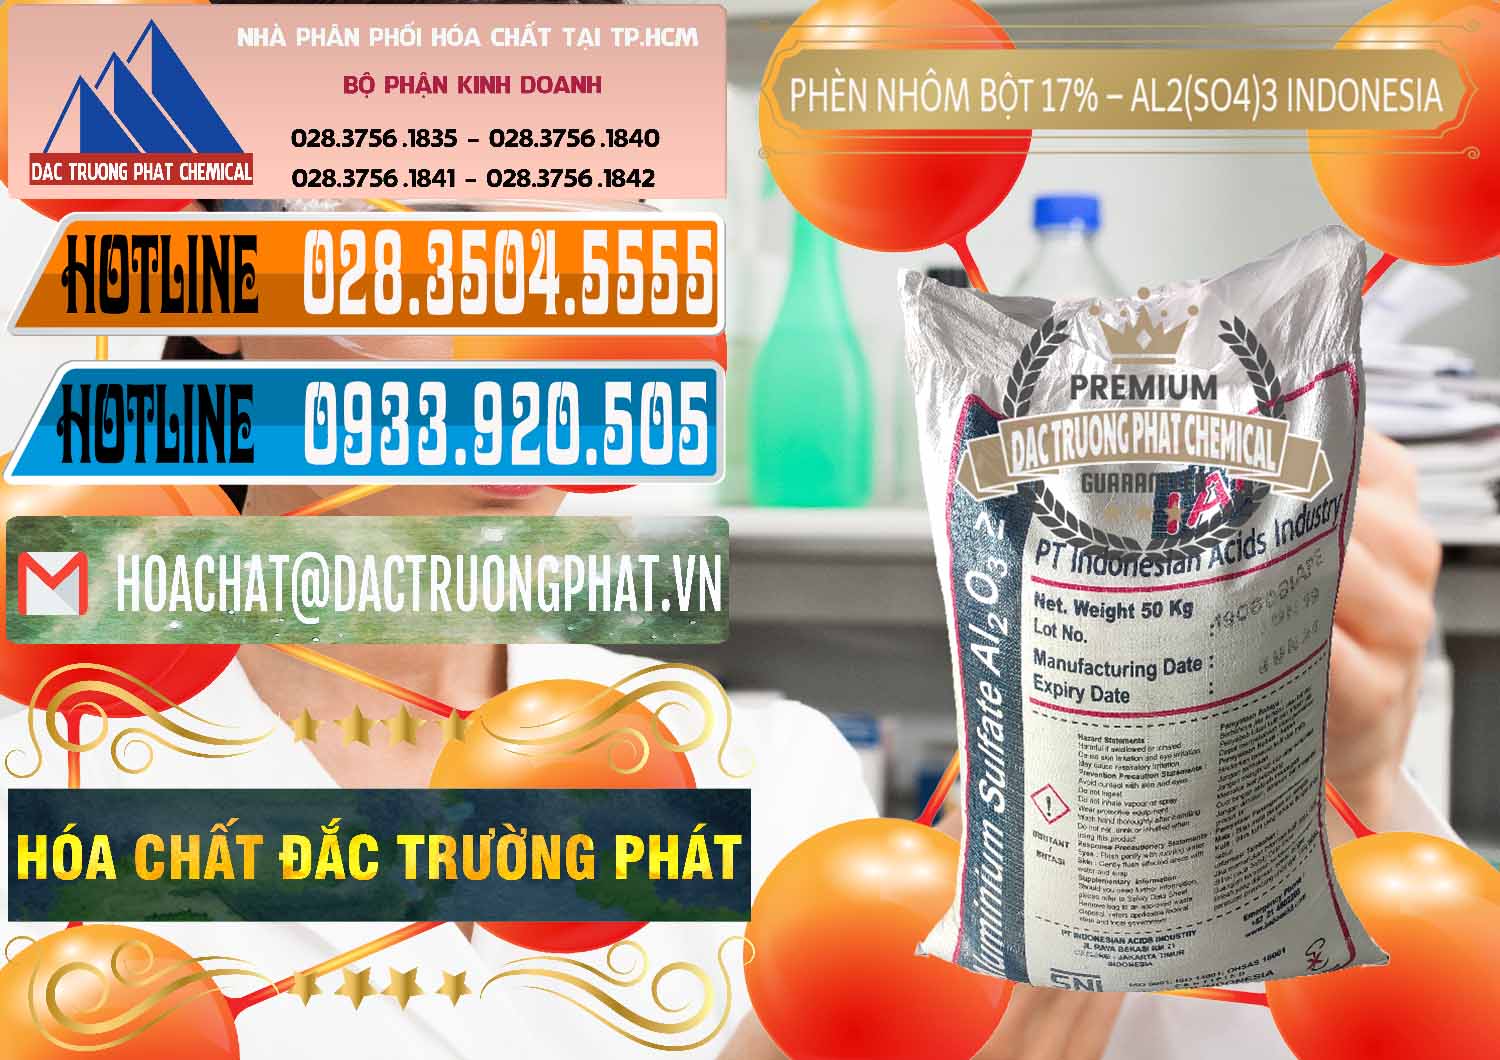 Công ty bán _ cung ứng Phèn Nhôm Bột - Al2(SO4)3 17% bao 50kg Indonesia - 0112 - Cung cấp ( kinh doanh ) hóa chất tại TP.HCM - stmp.net